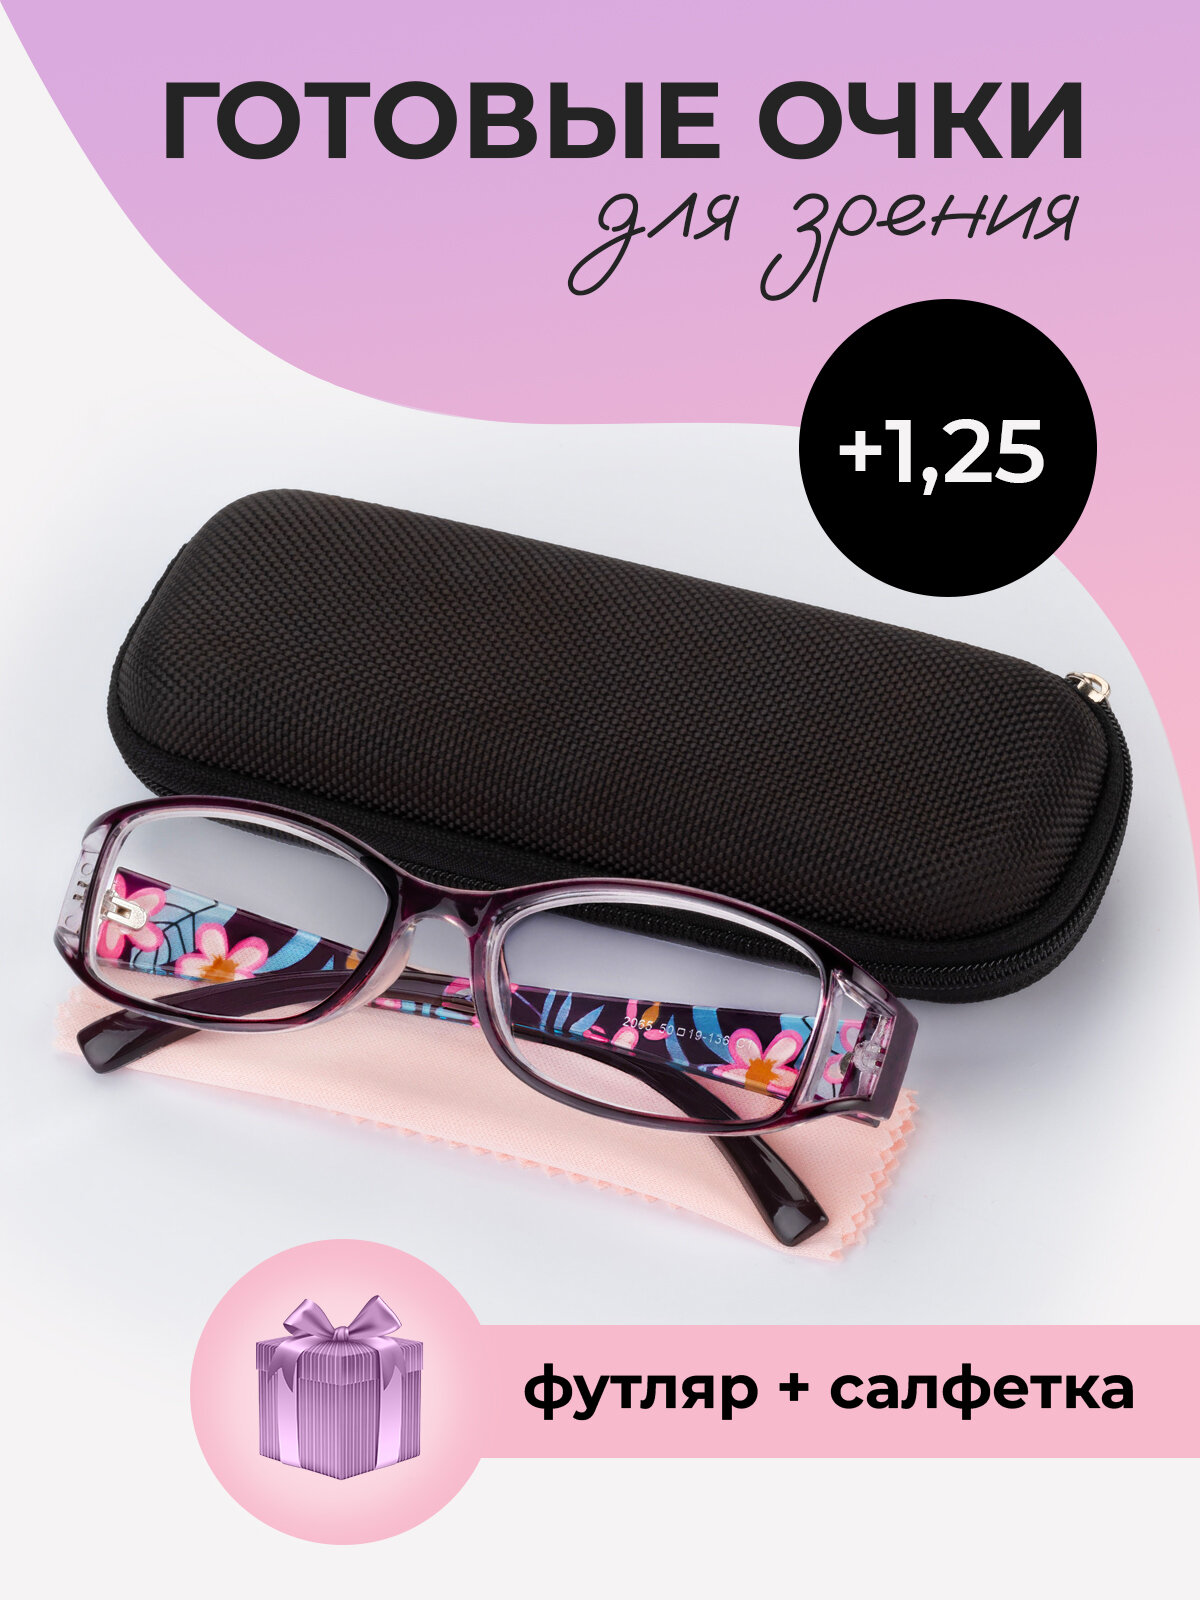 Готовые очки для зрения женские корригирующие с диоптриями +1.25